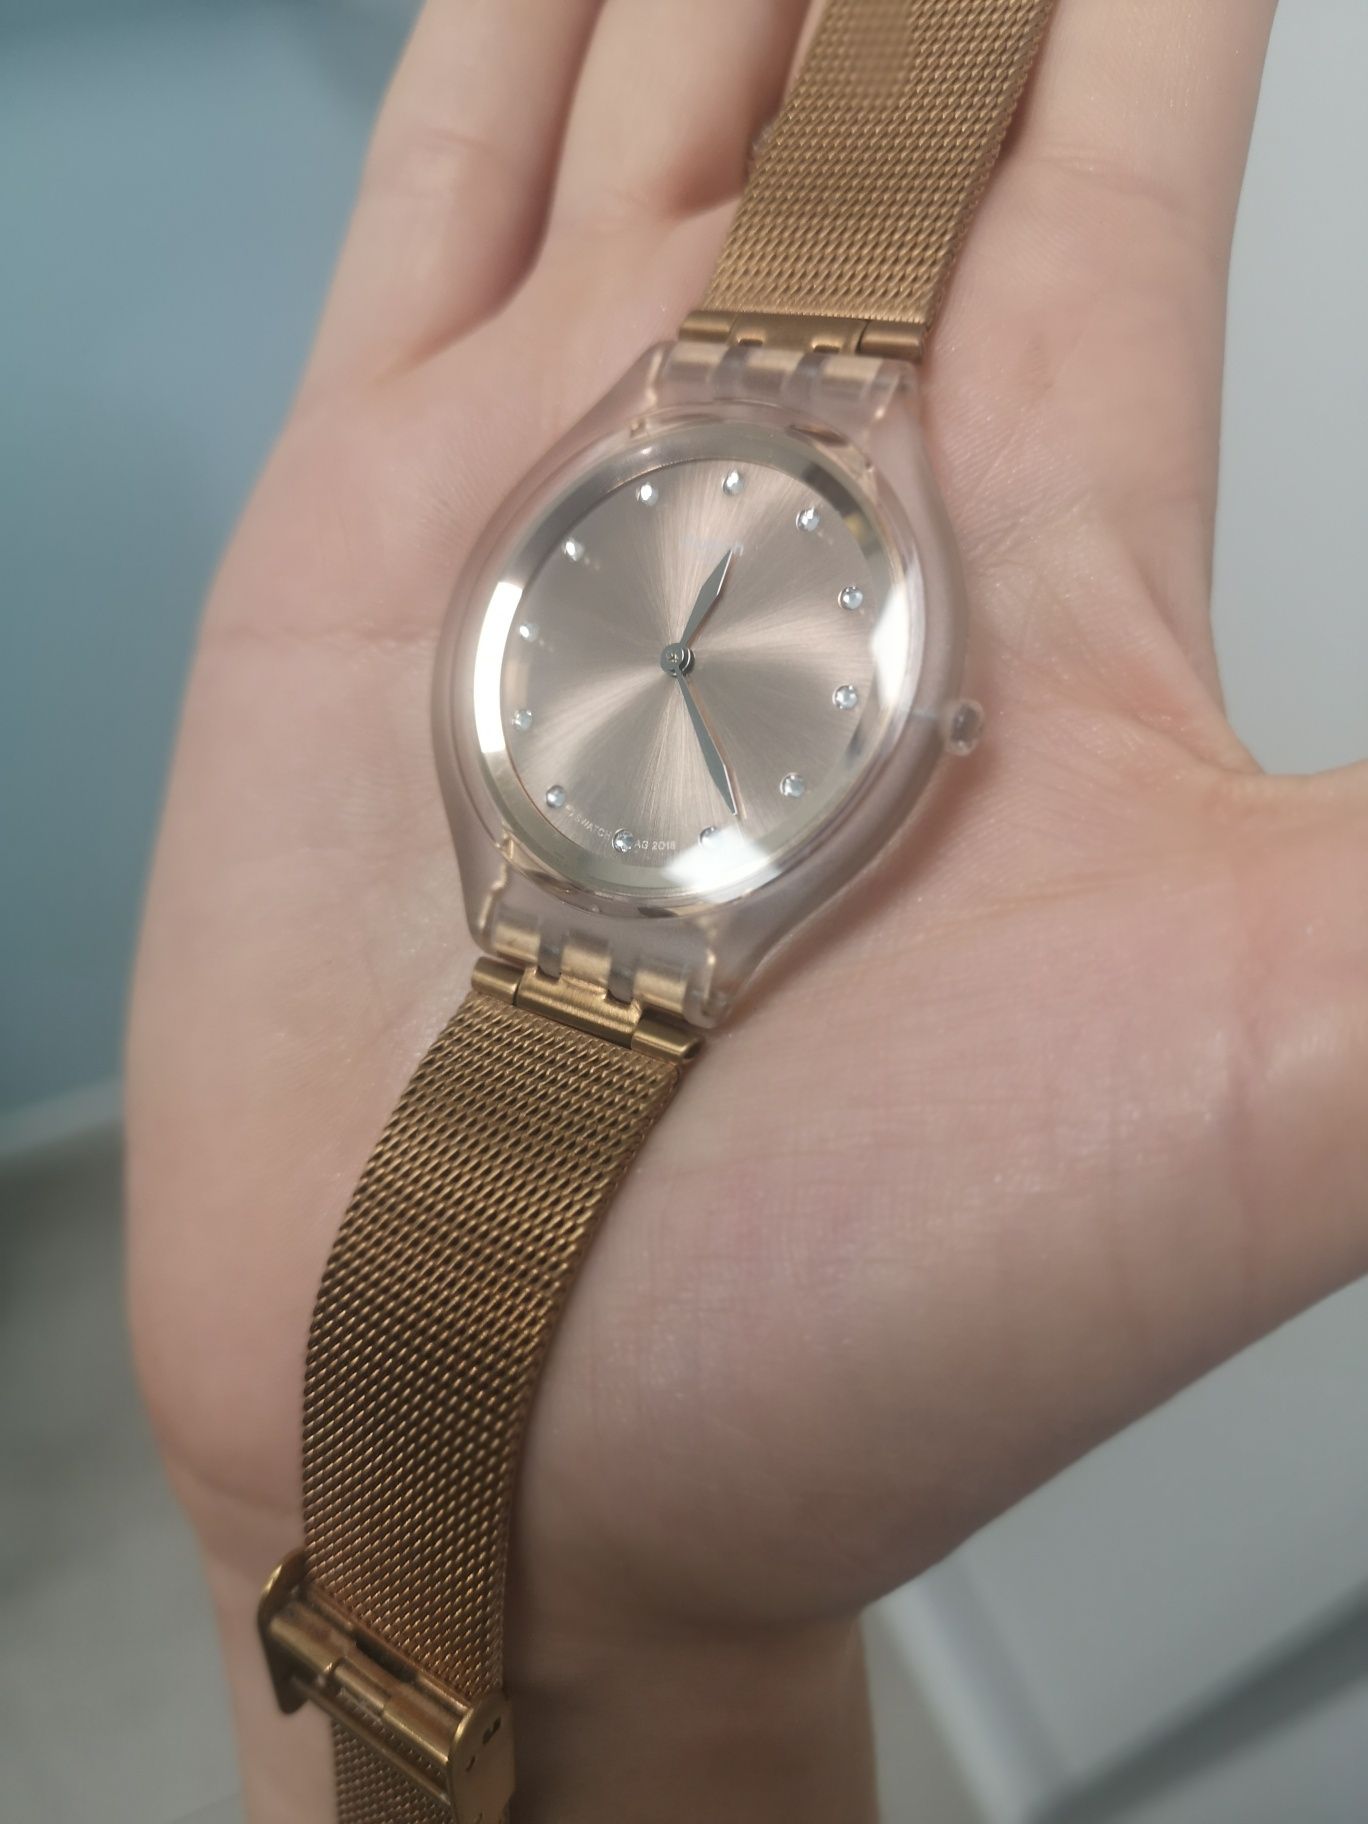 Zegarek swatch skin big stal miedziany różowe zloto